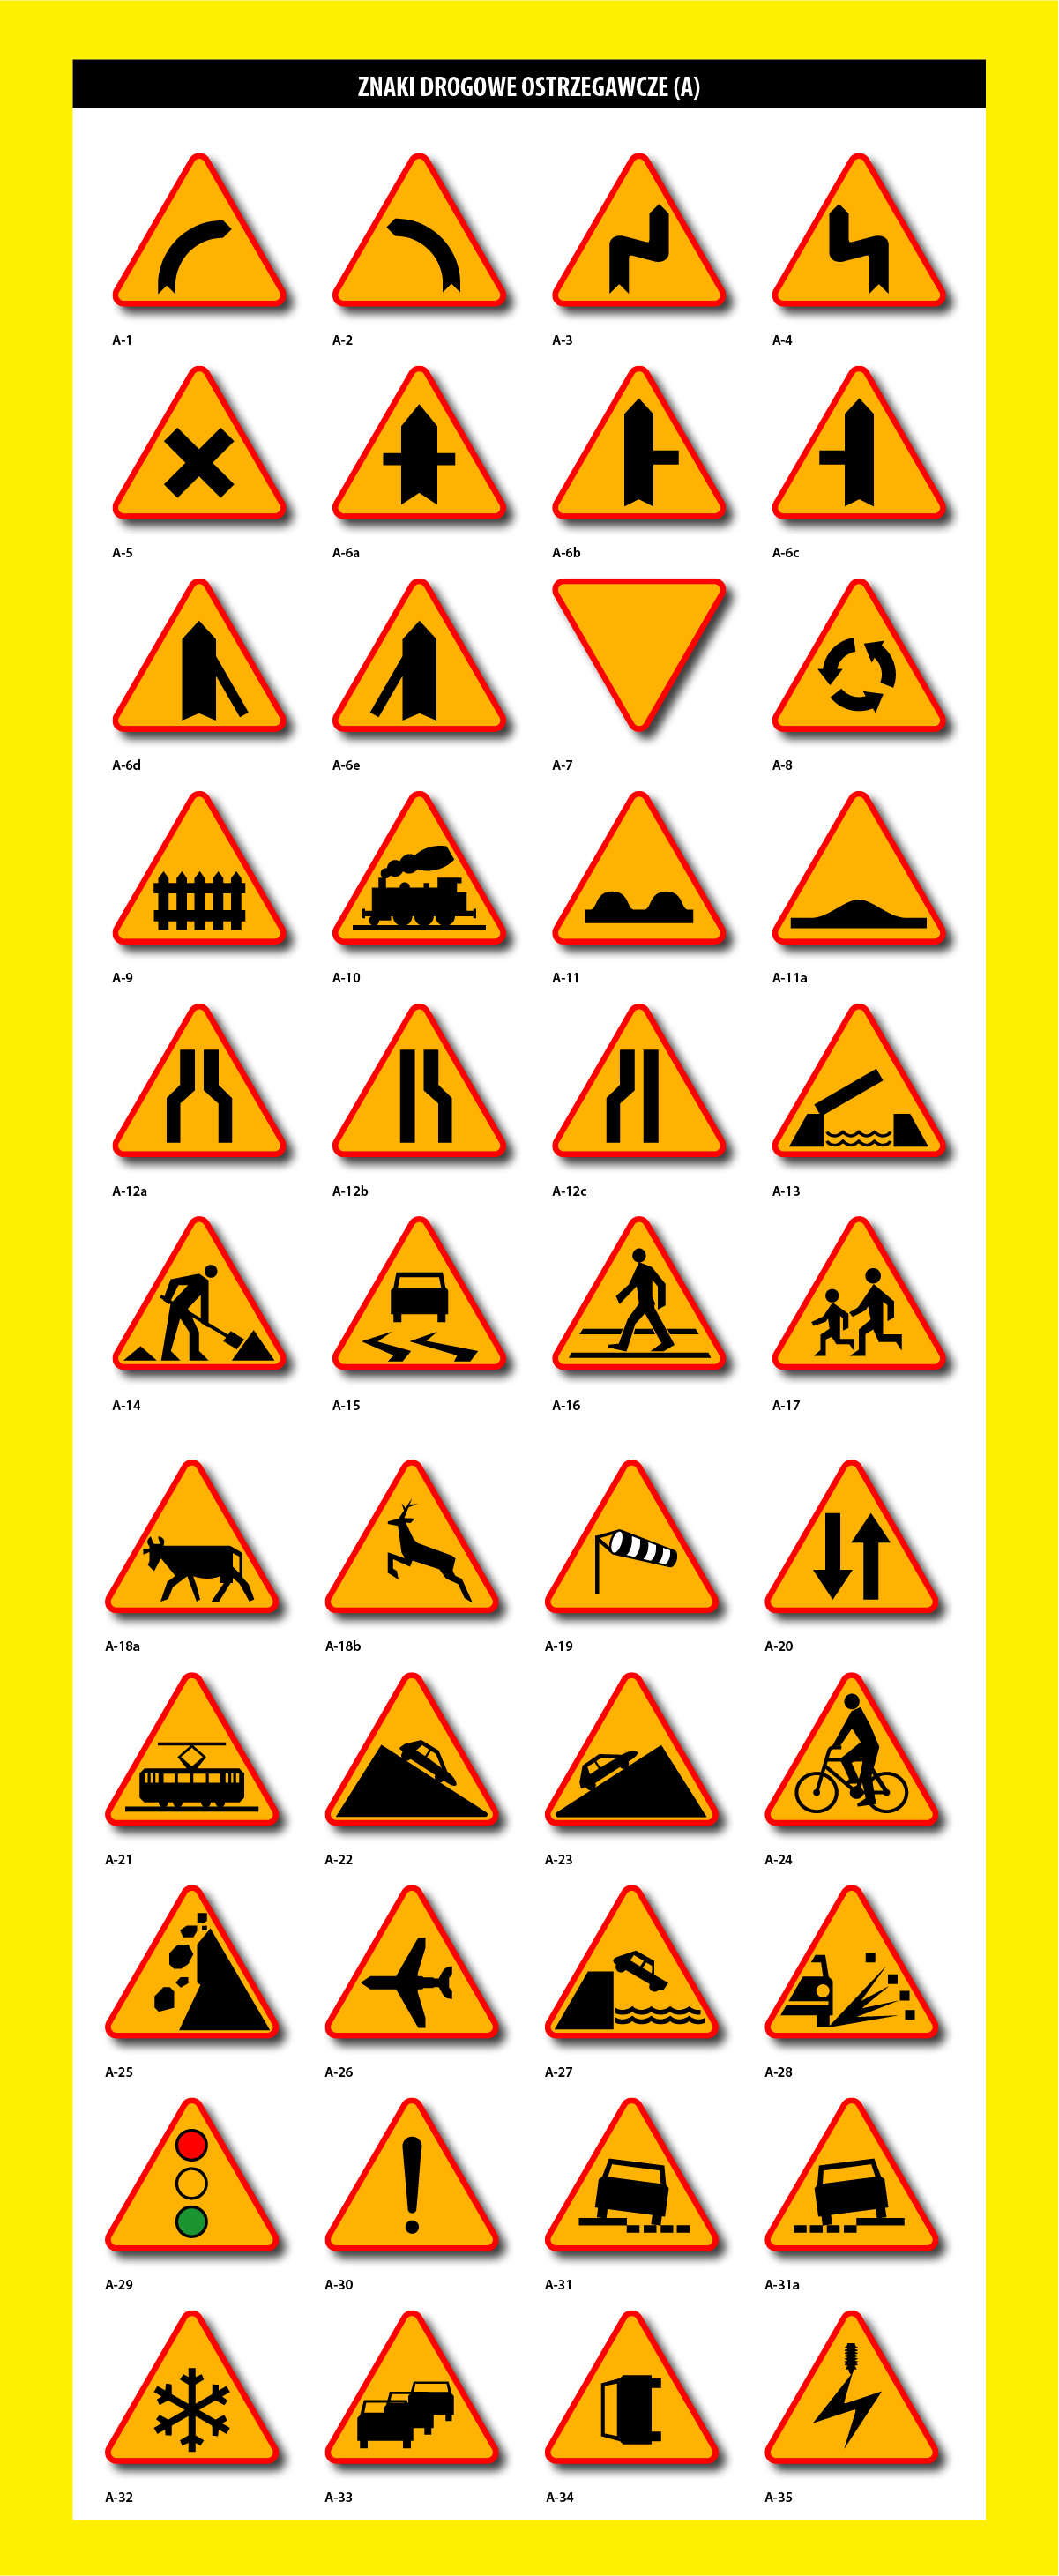 Mój DoM Bis »  Znaki drogowe ostrzegawcza (A)